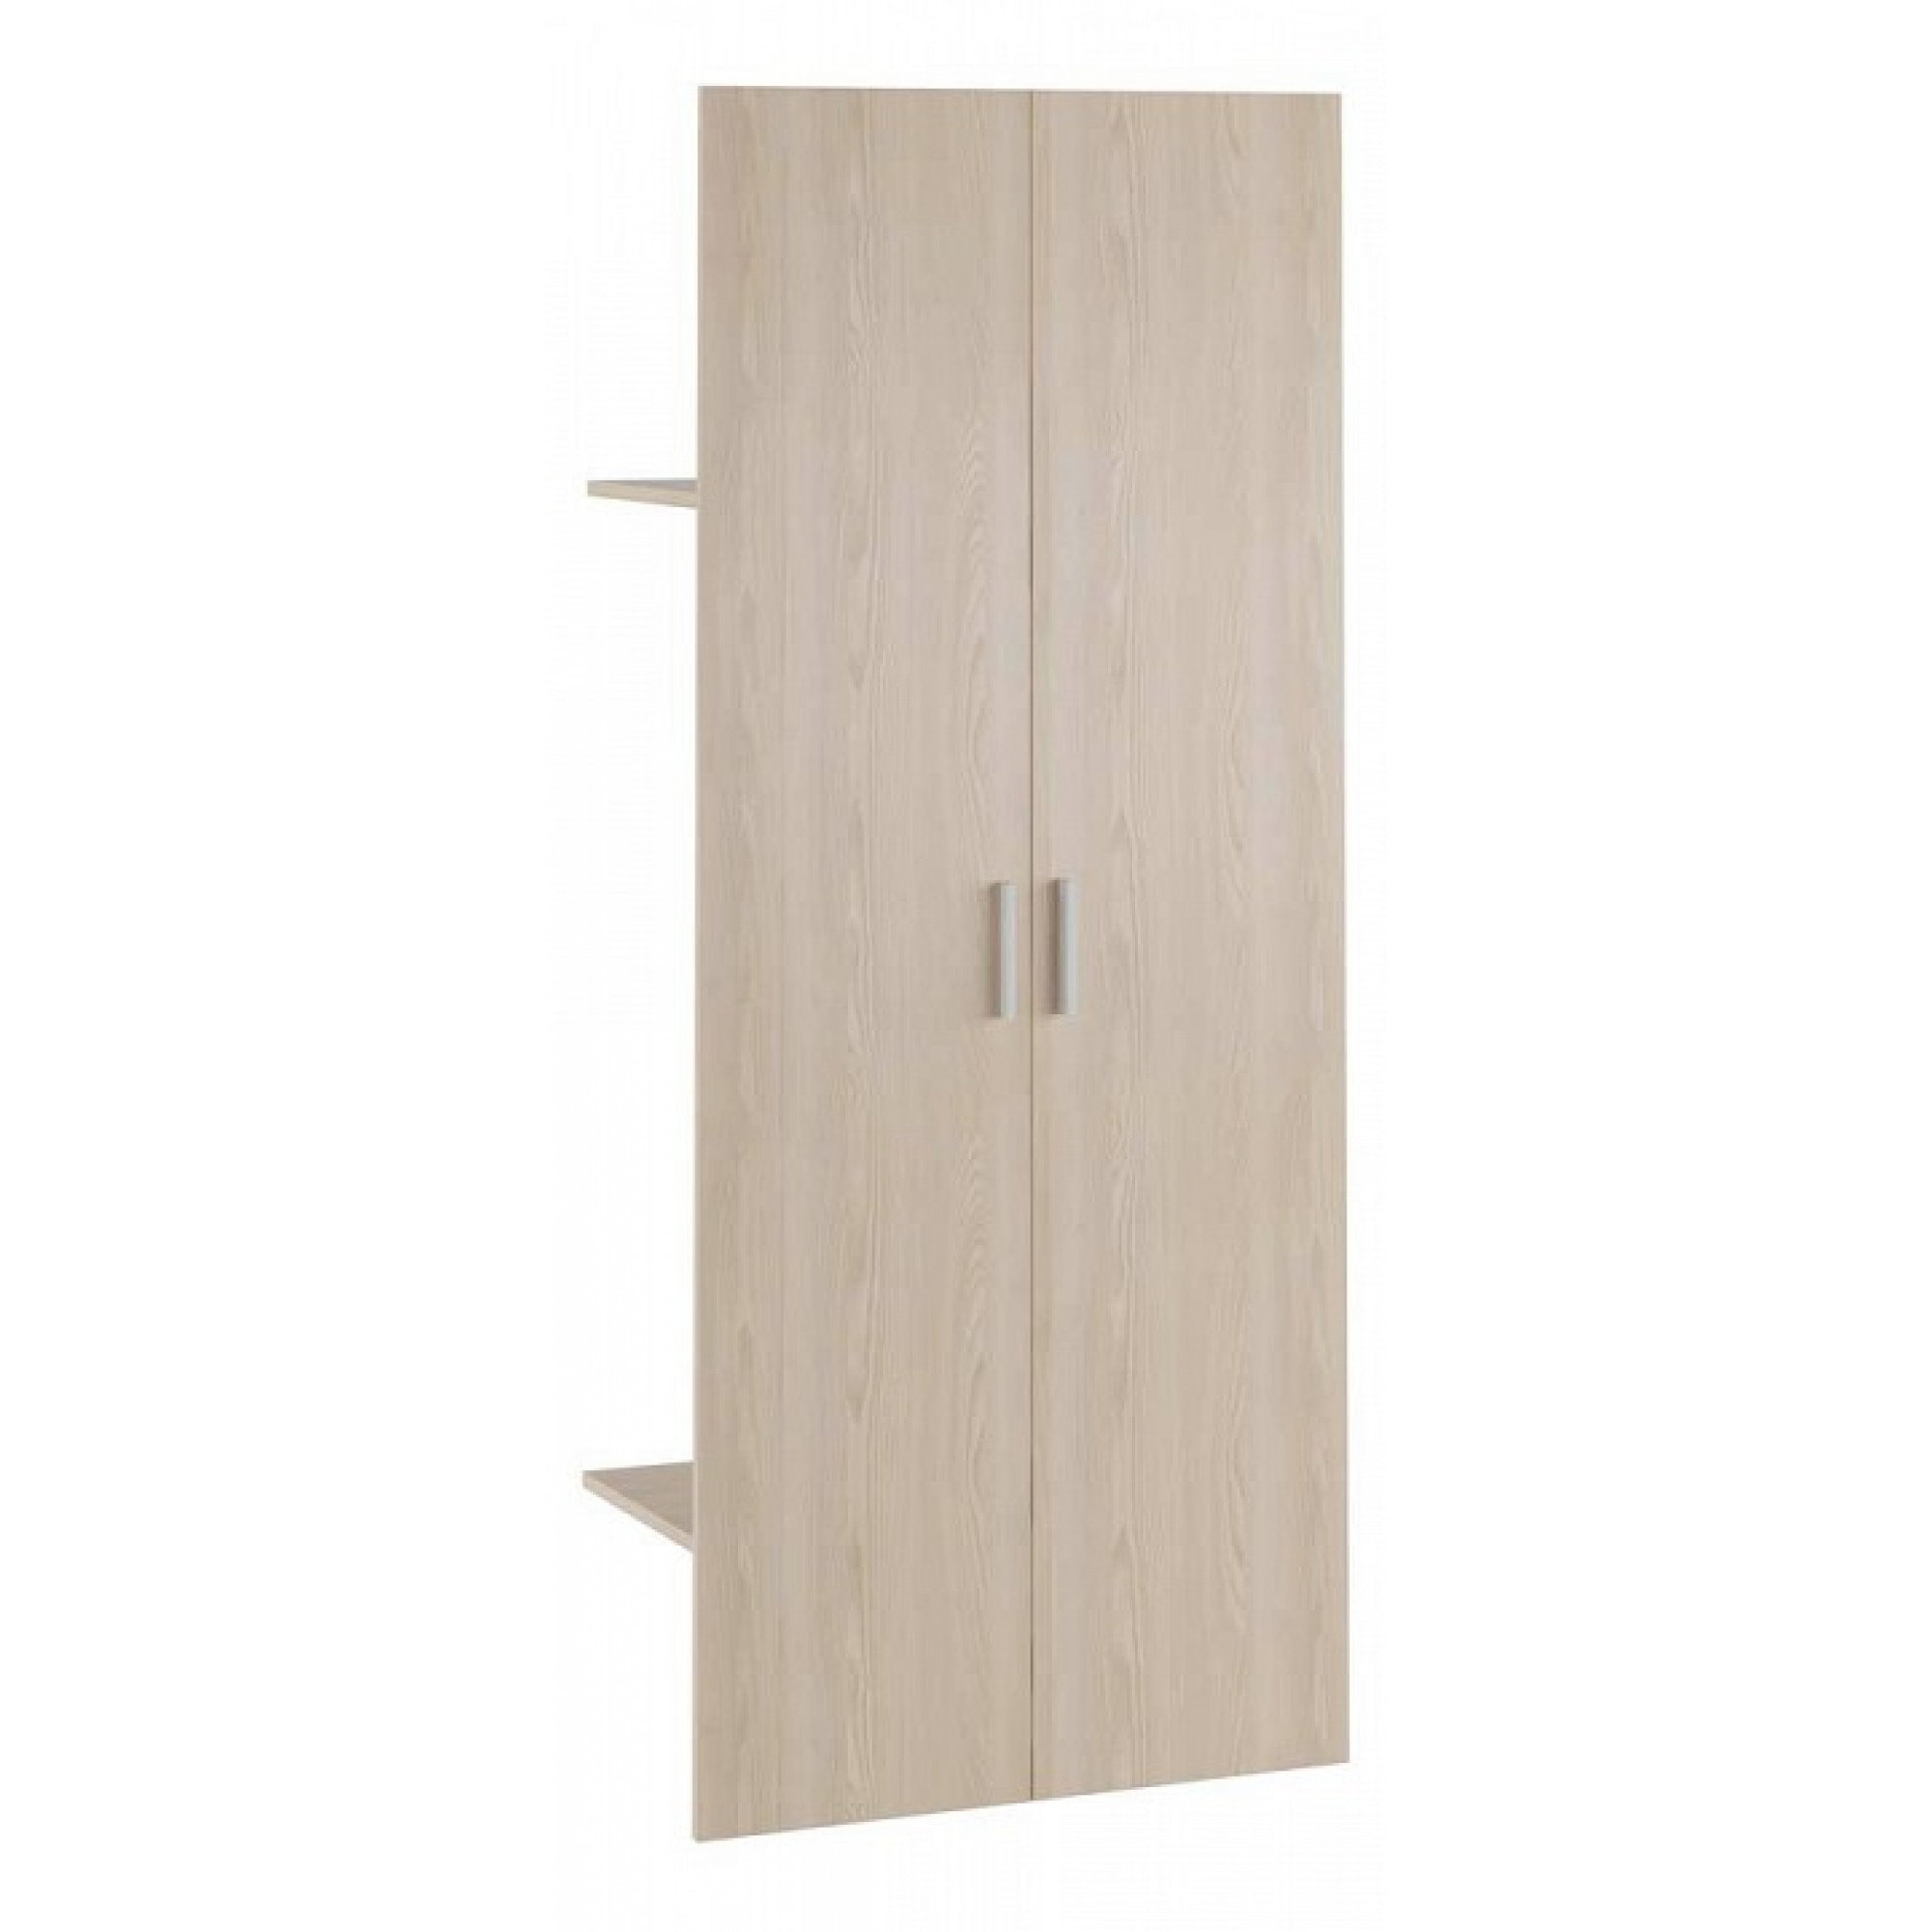 Дверь распашная с полками Madrid древесина коричневая светлая дуб 900x420x2060(POI_MDR17554204)